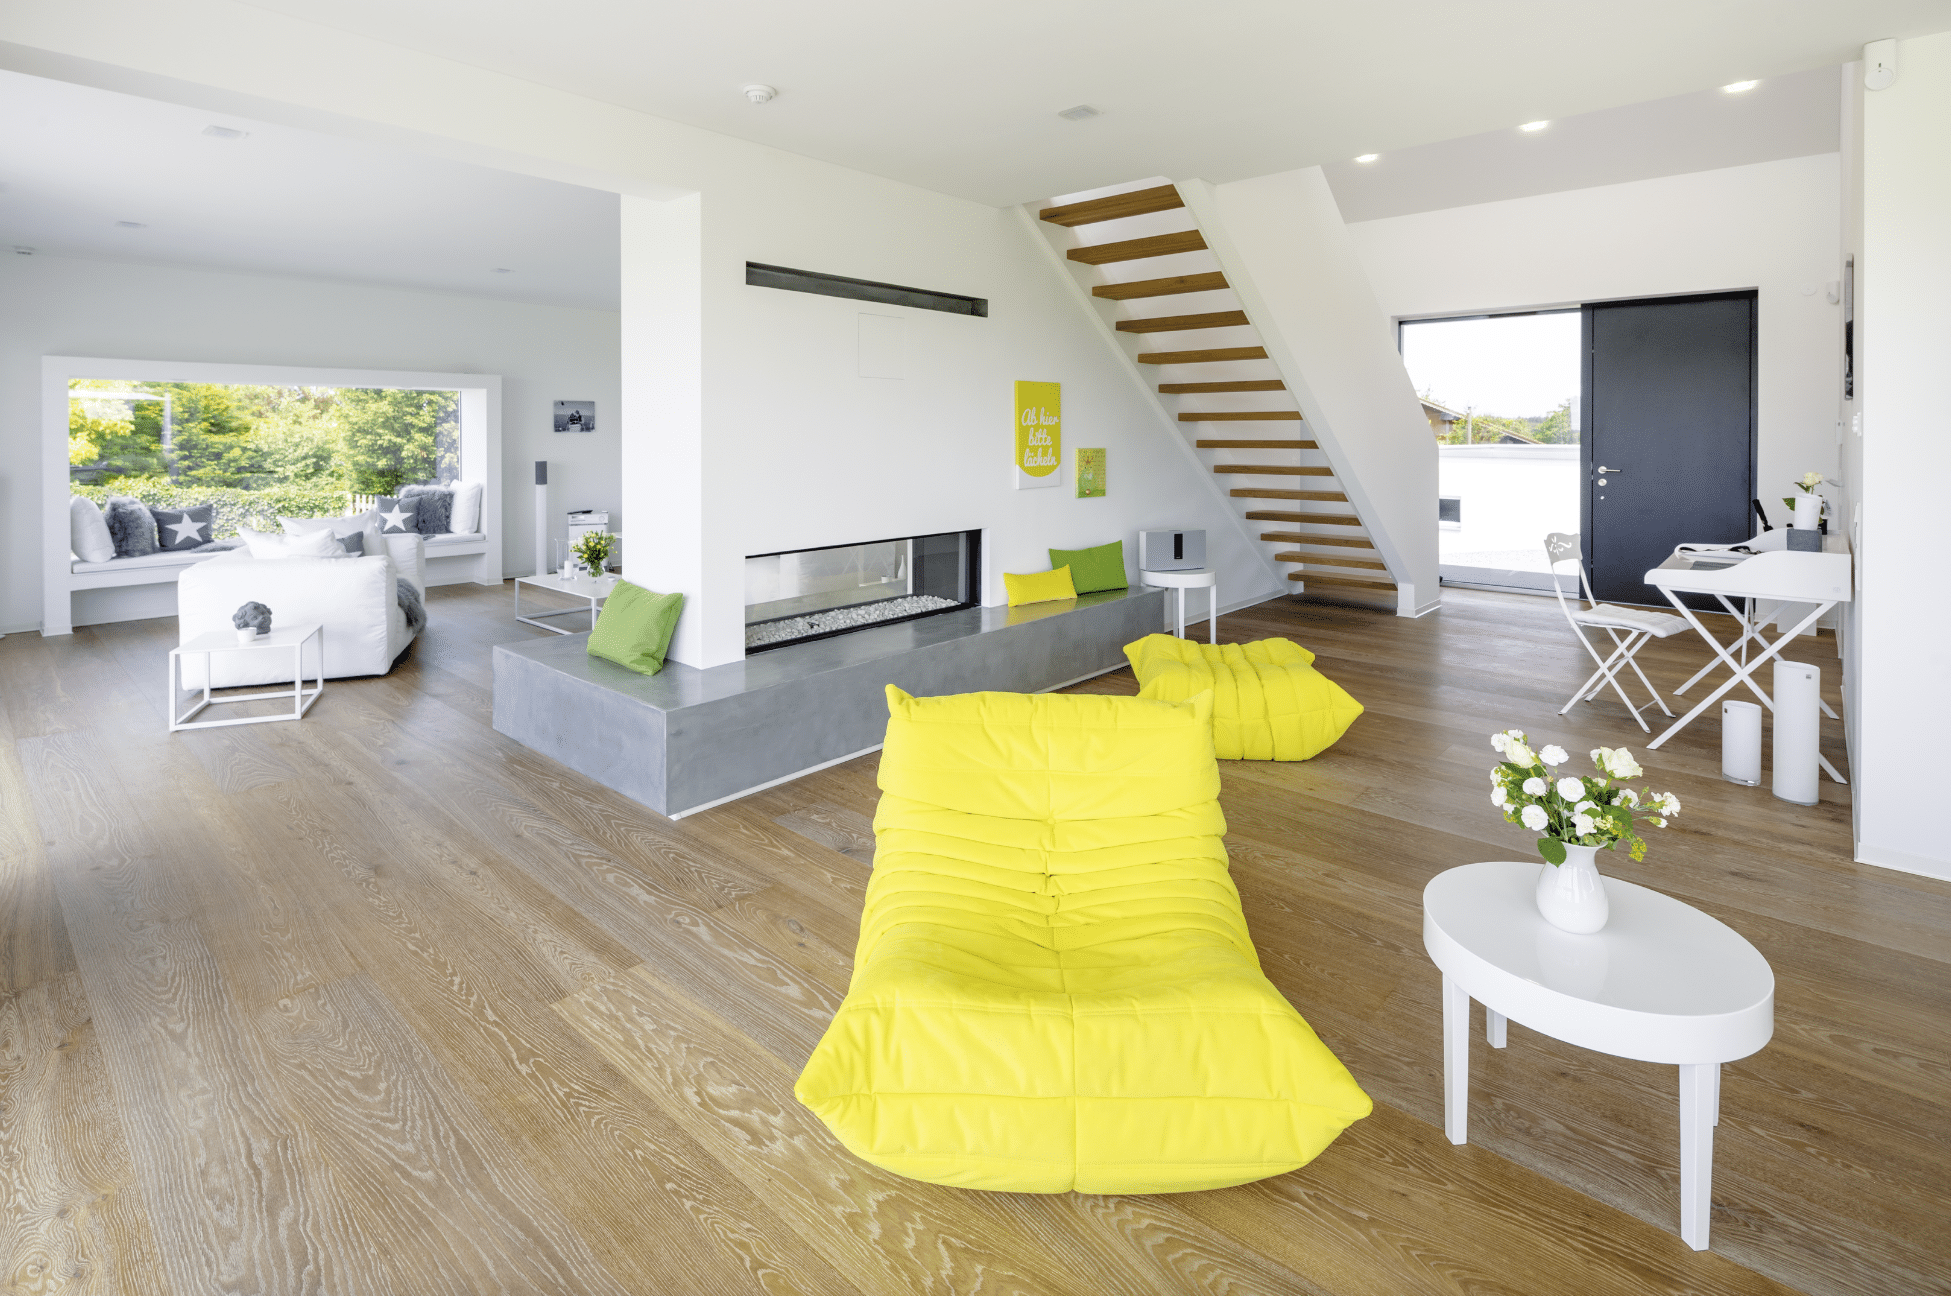 Offener Wohnraum mit moderner Treppe und knalligen Accessoires in einem Regnauer Fertighaus.